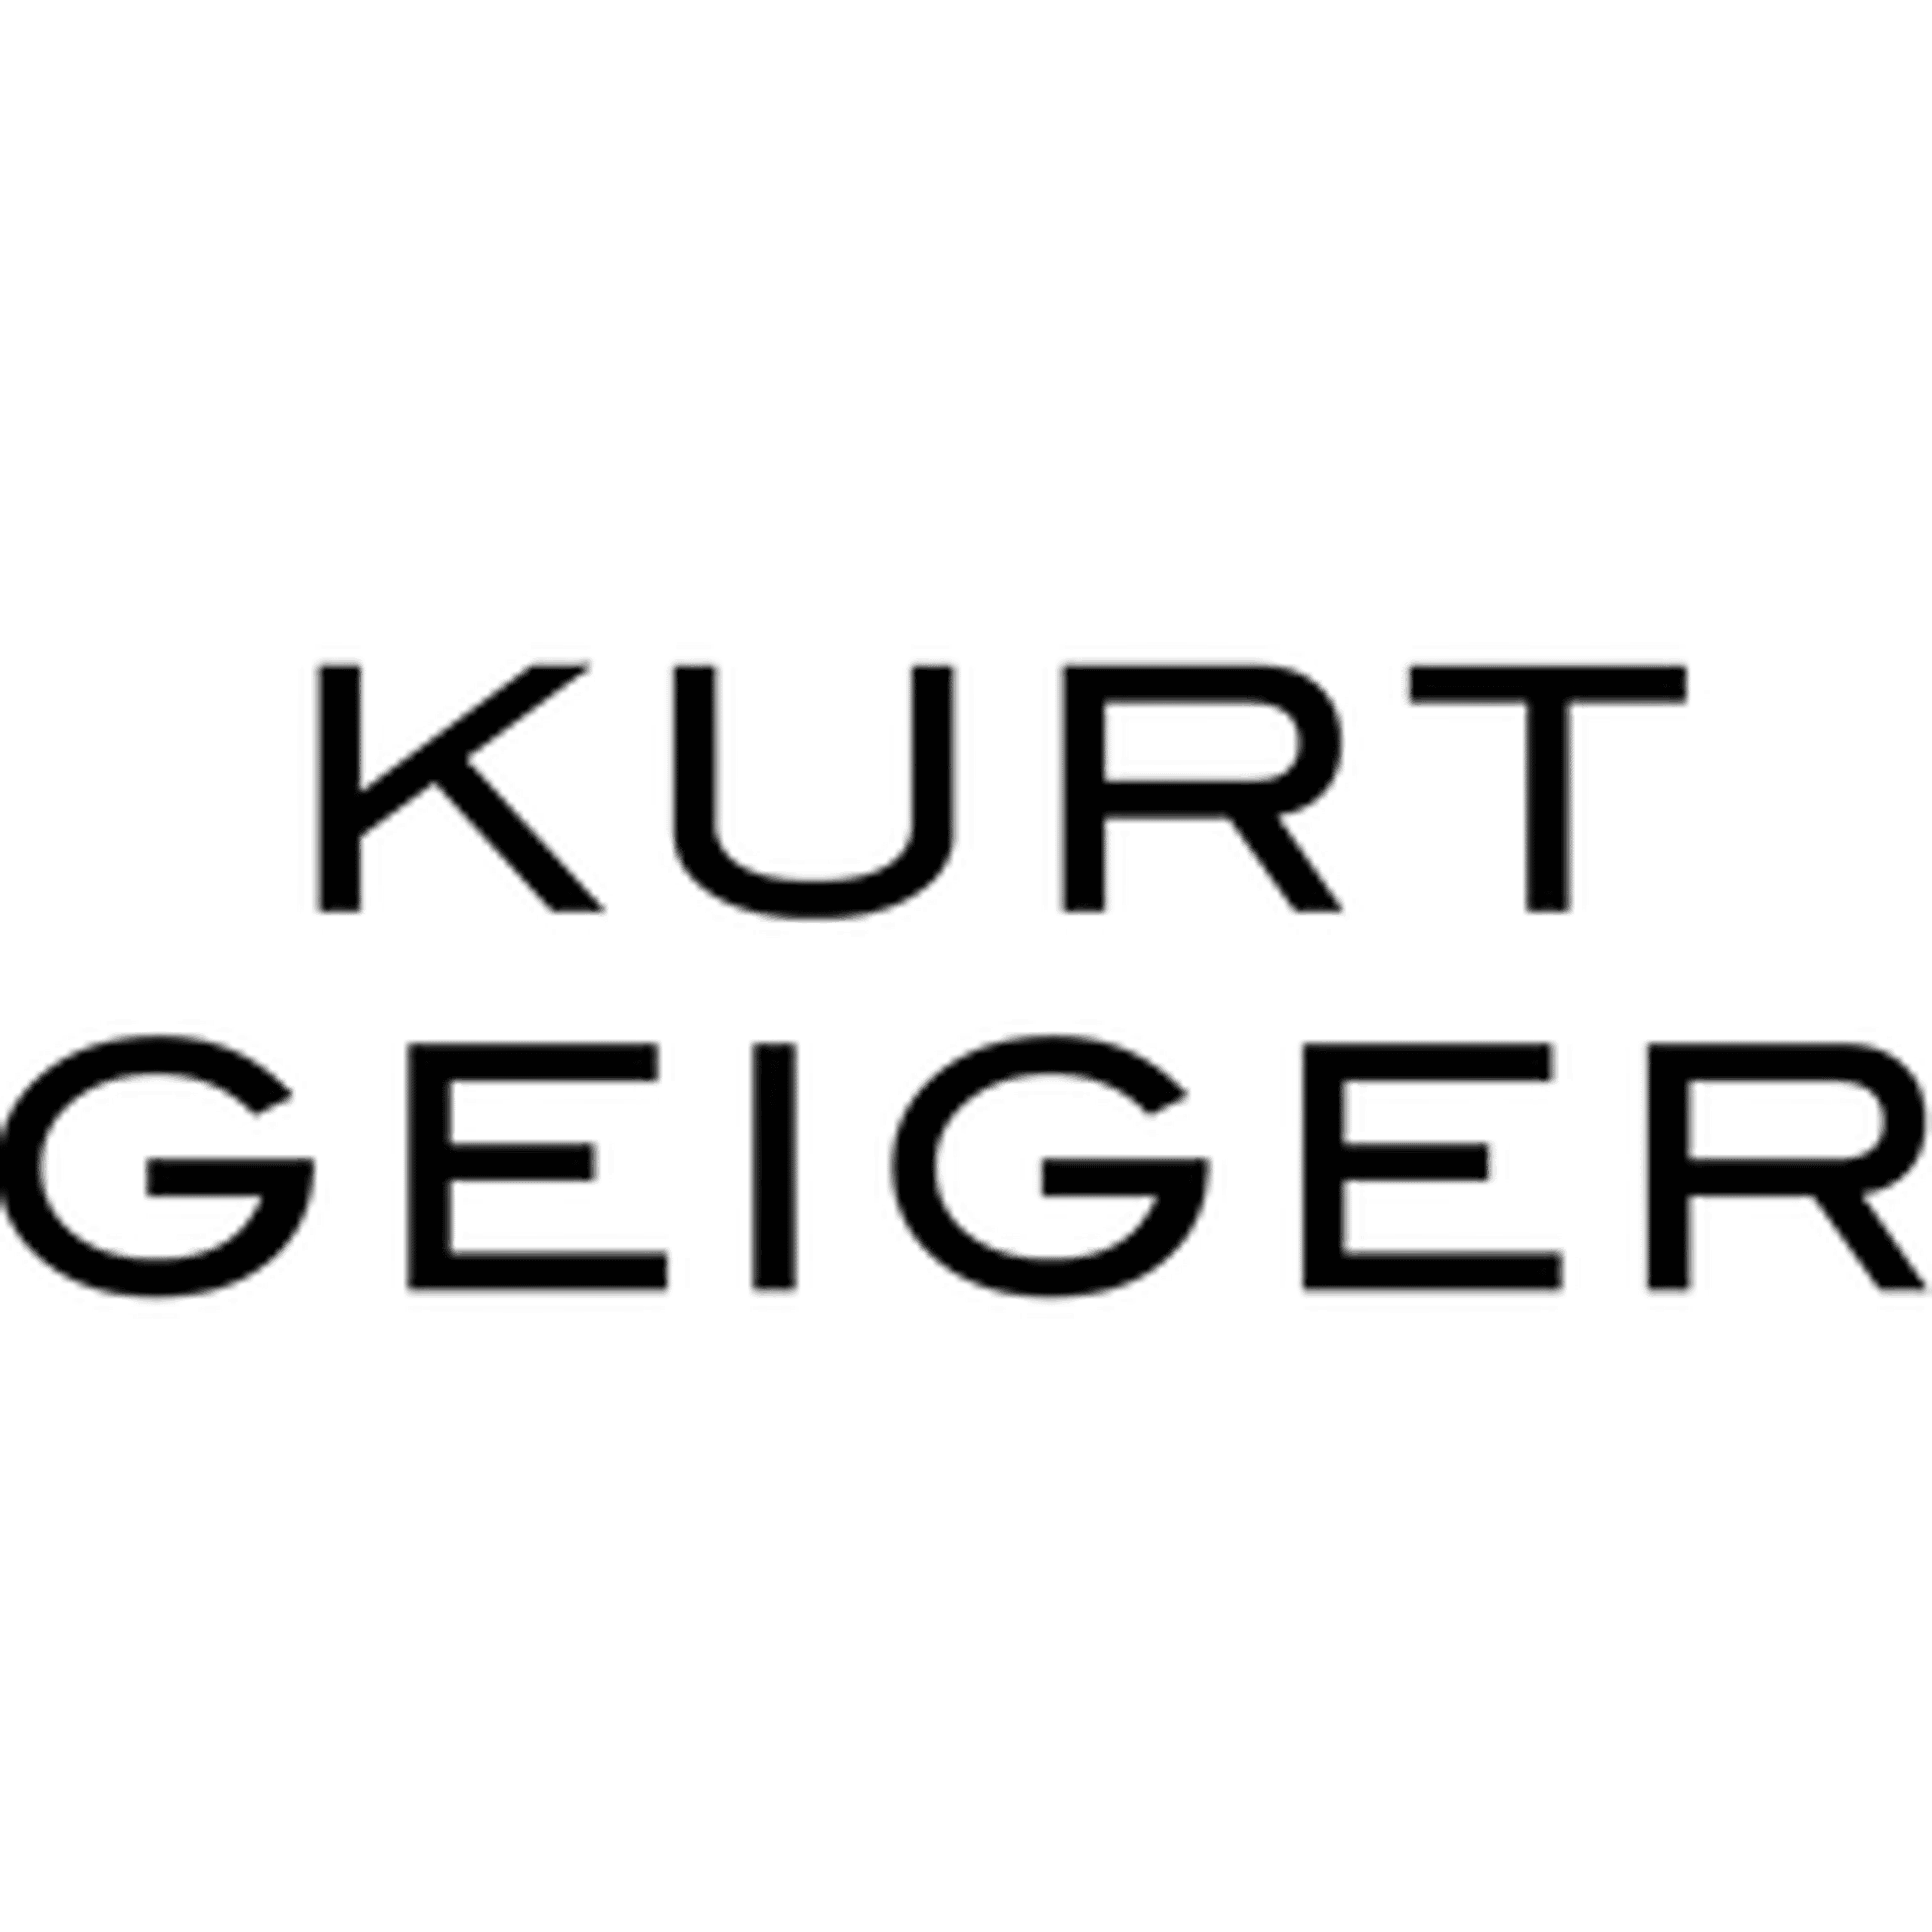  Kurt Geiger 